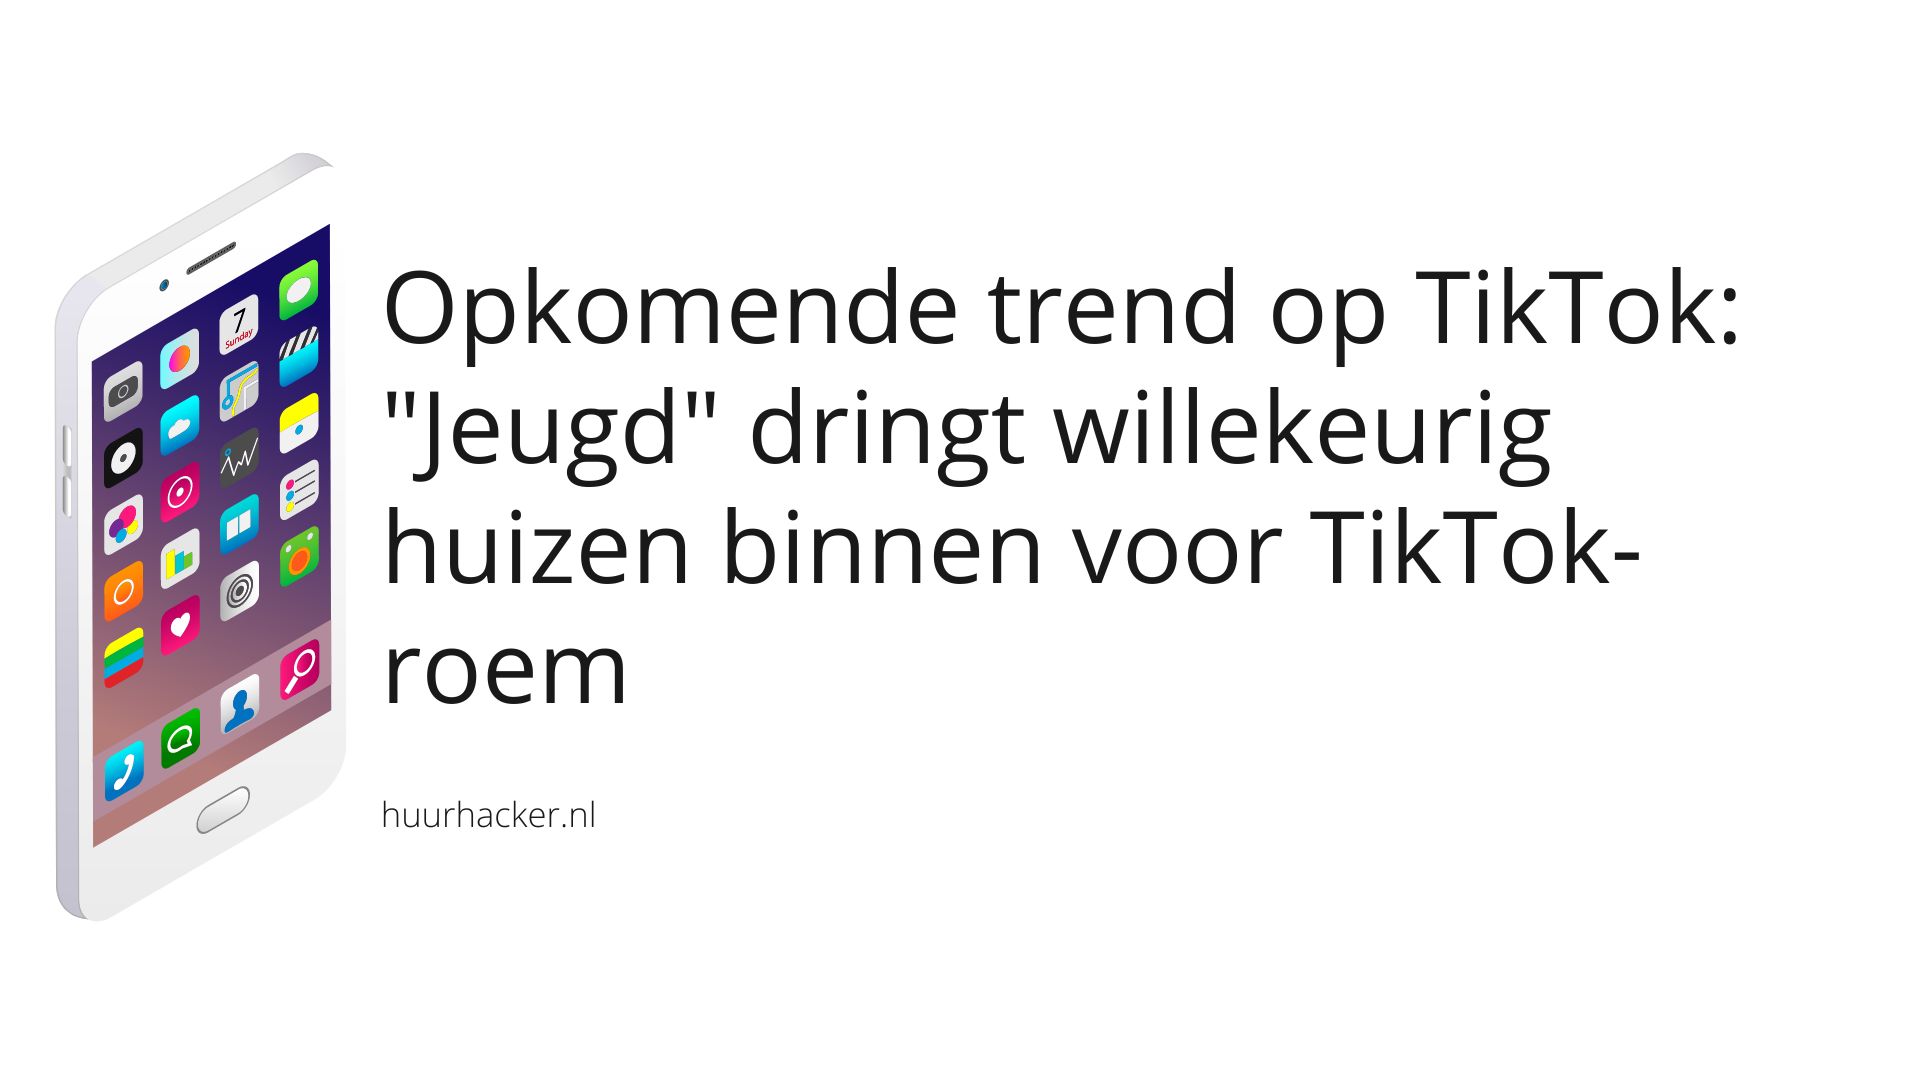 Opkomende trend op TikTok: “Jeugd” dringt willekeurig huizen binnen voor TikTok-roem